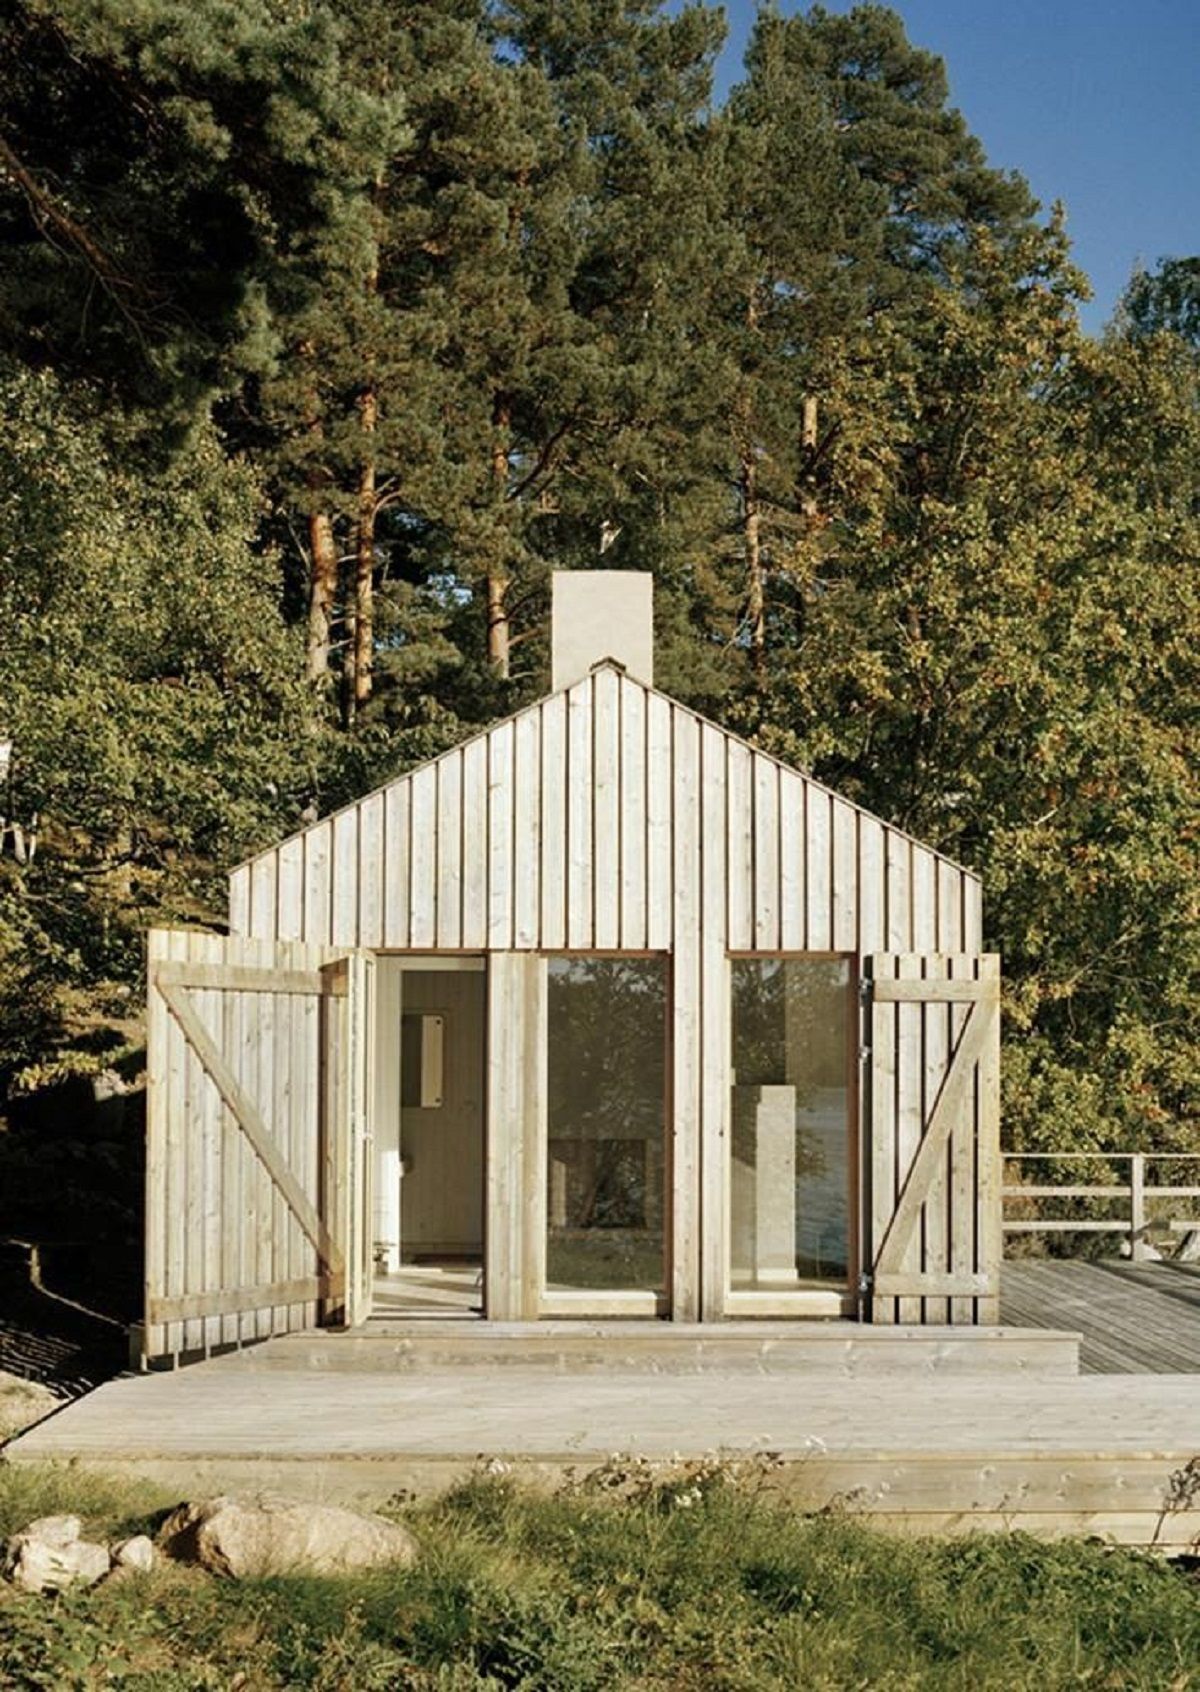 Thiết kế nhà tắm hơi: Những ví dụ về kiến trúc gỗ quy mô nhỏ